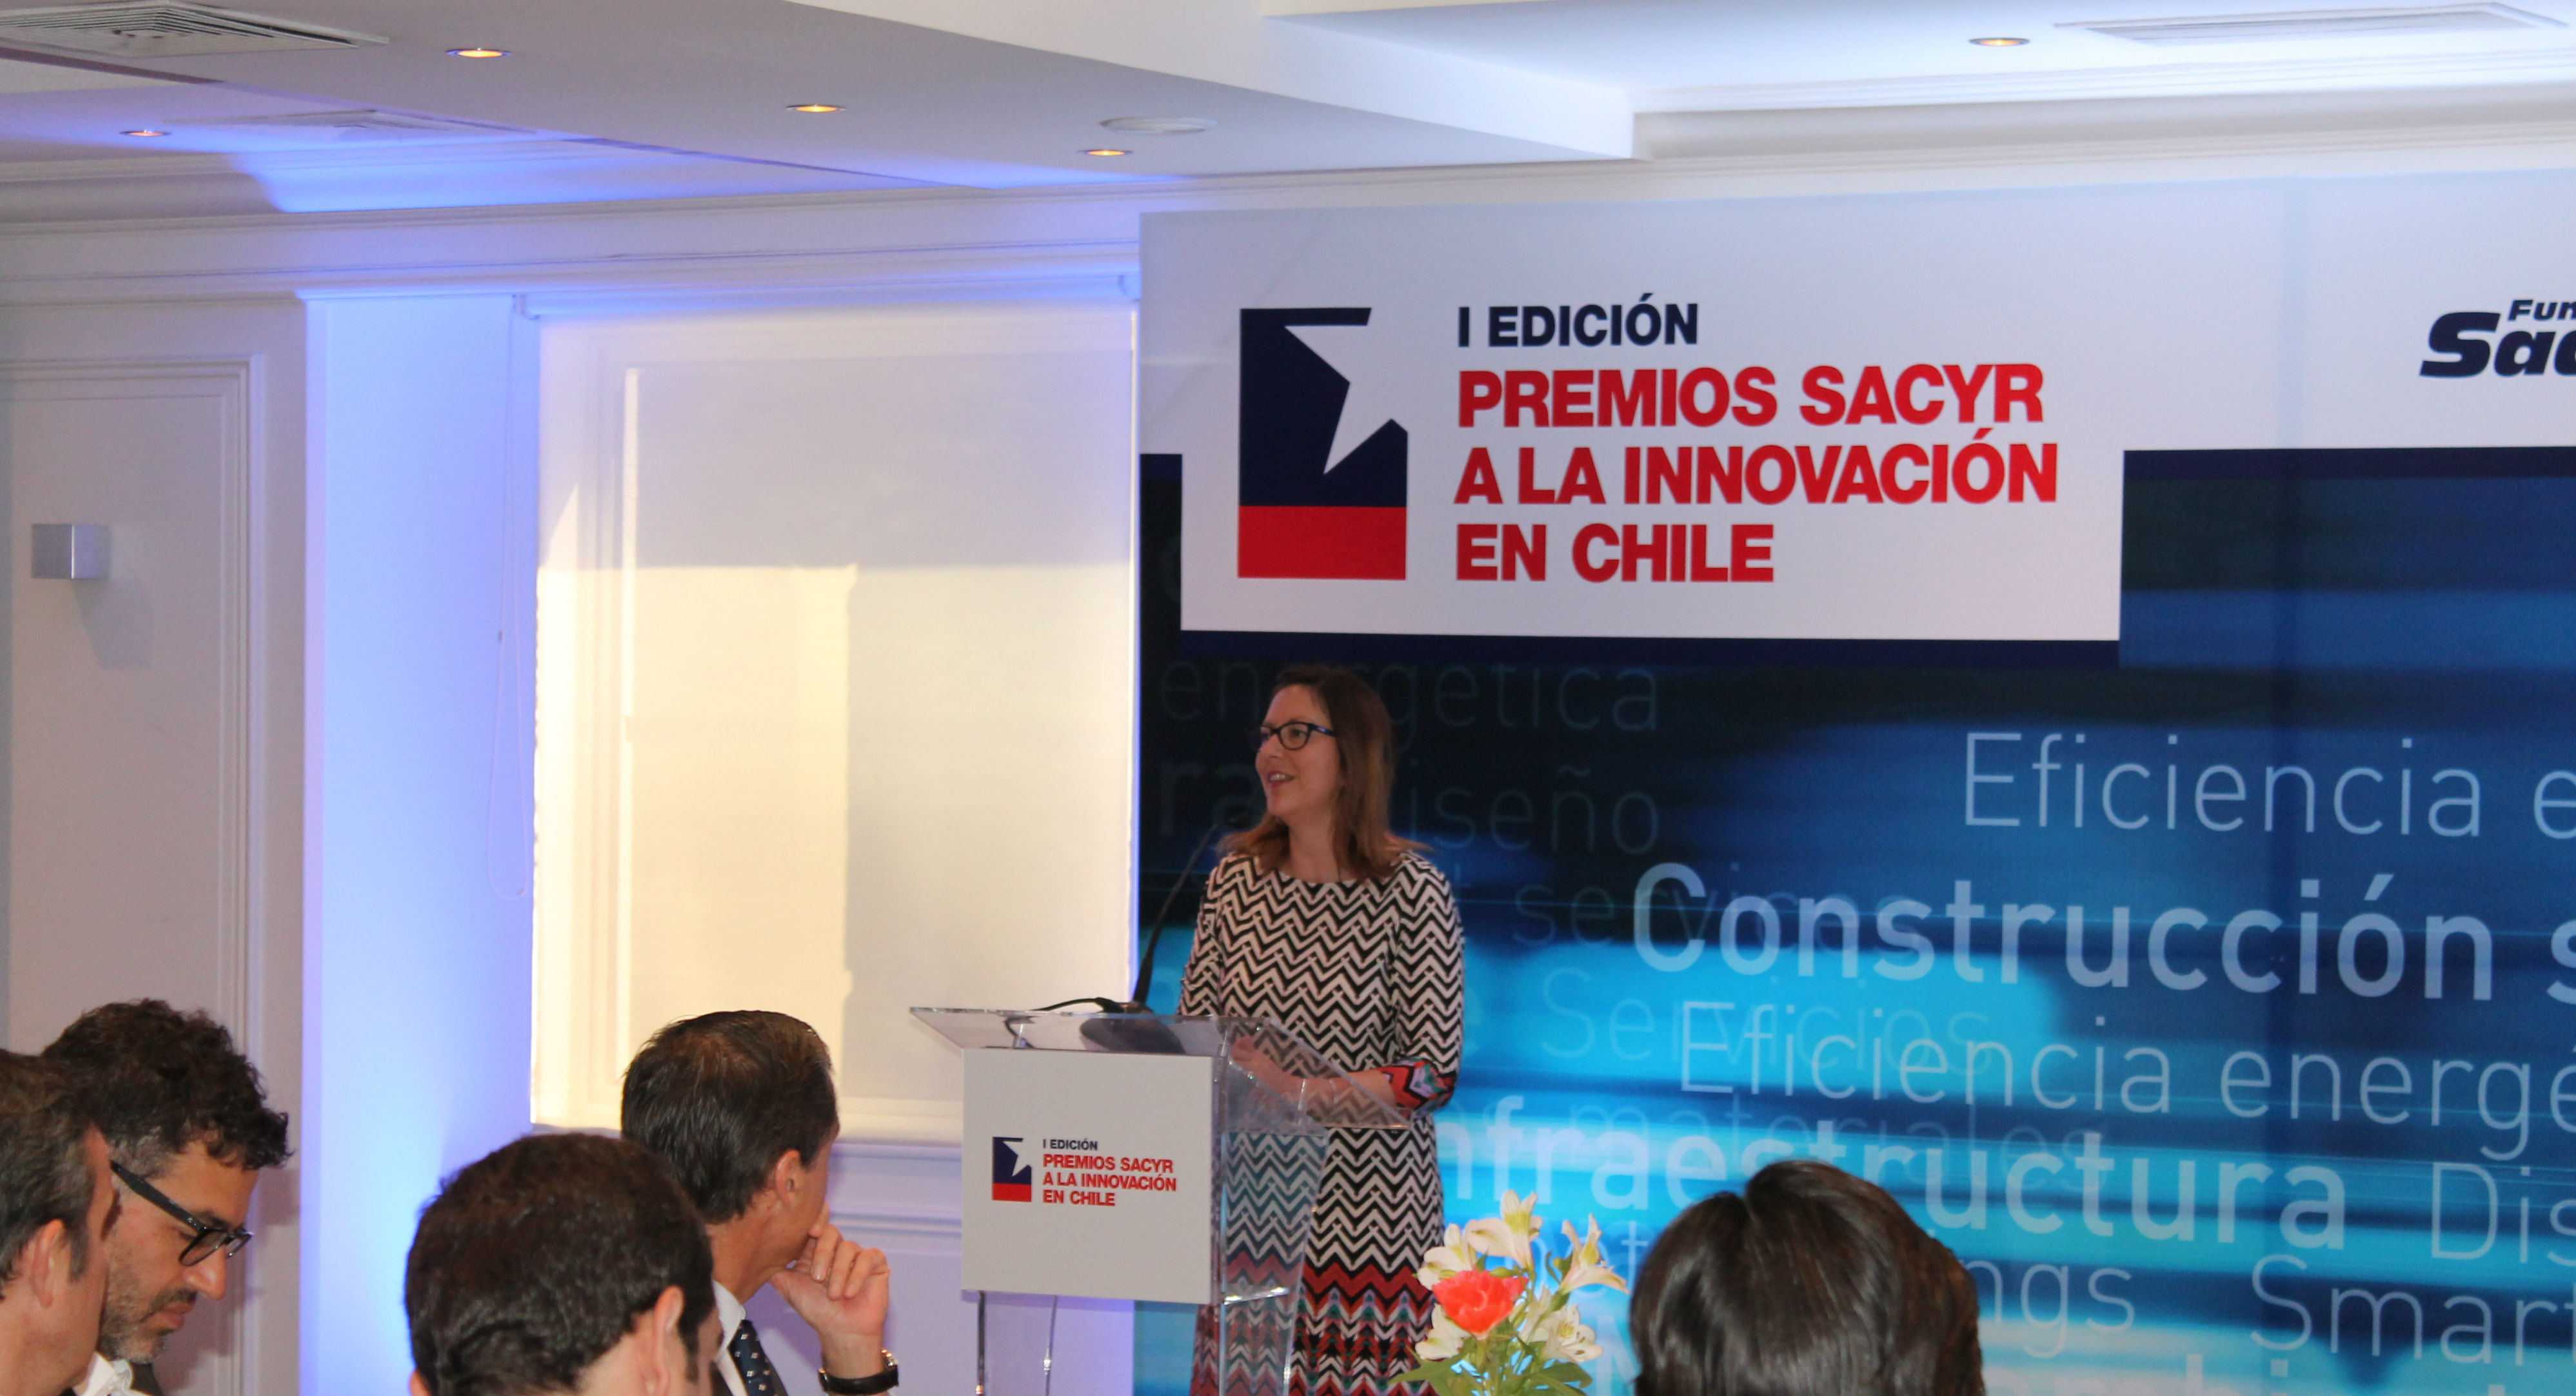 Subsecretaria de Economía: “La innovación se ha transformado en un pilar fundamental para la productividad y competitividad de la economía chilena”